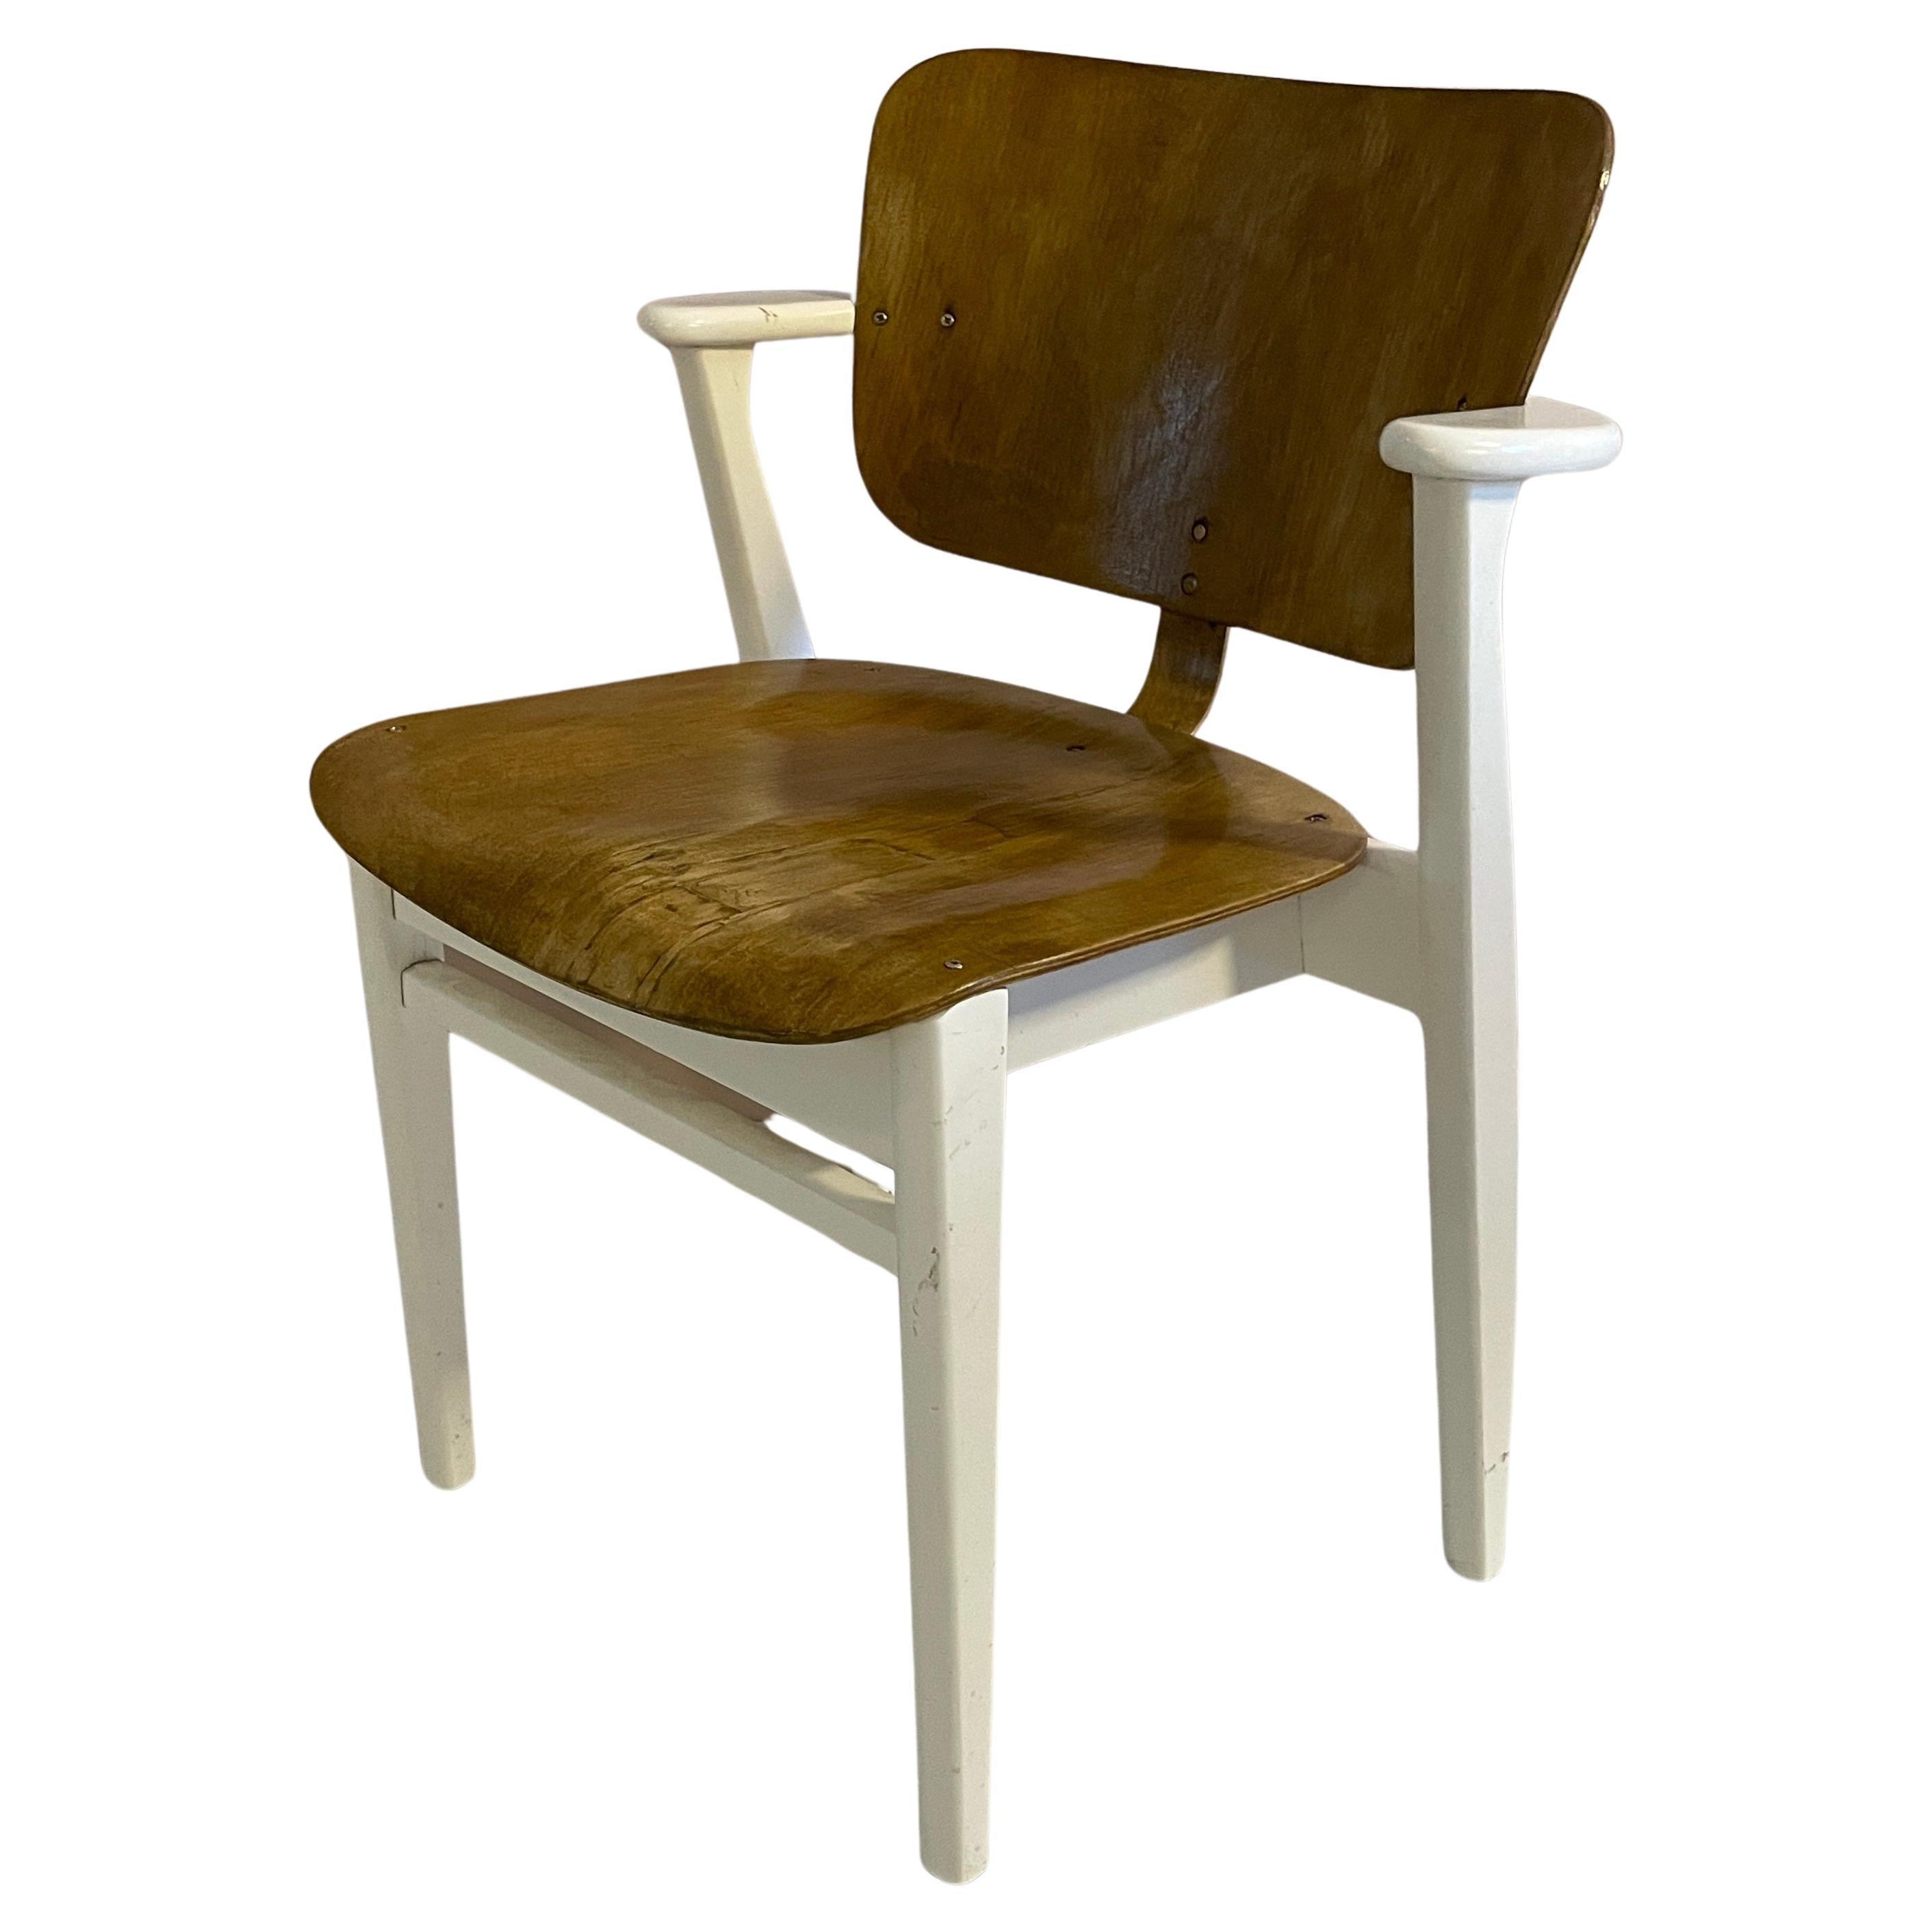 Domus-Stuhl aus der Mitte des 20. Jahrhunderts, entworfen von Ilmari Tapiovaara, Finnland